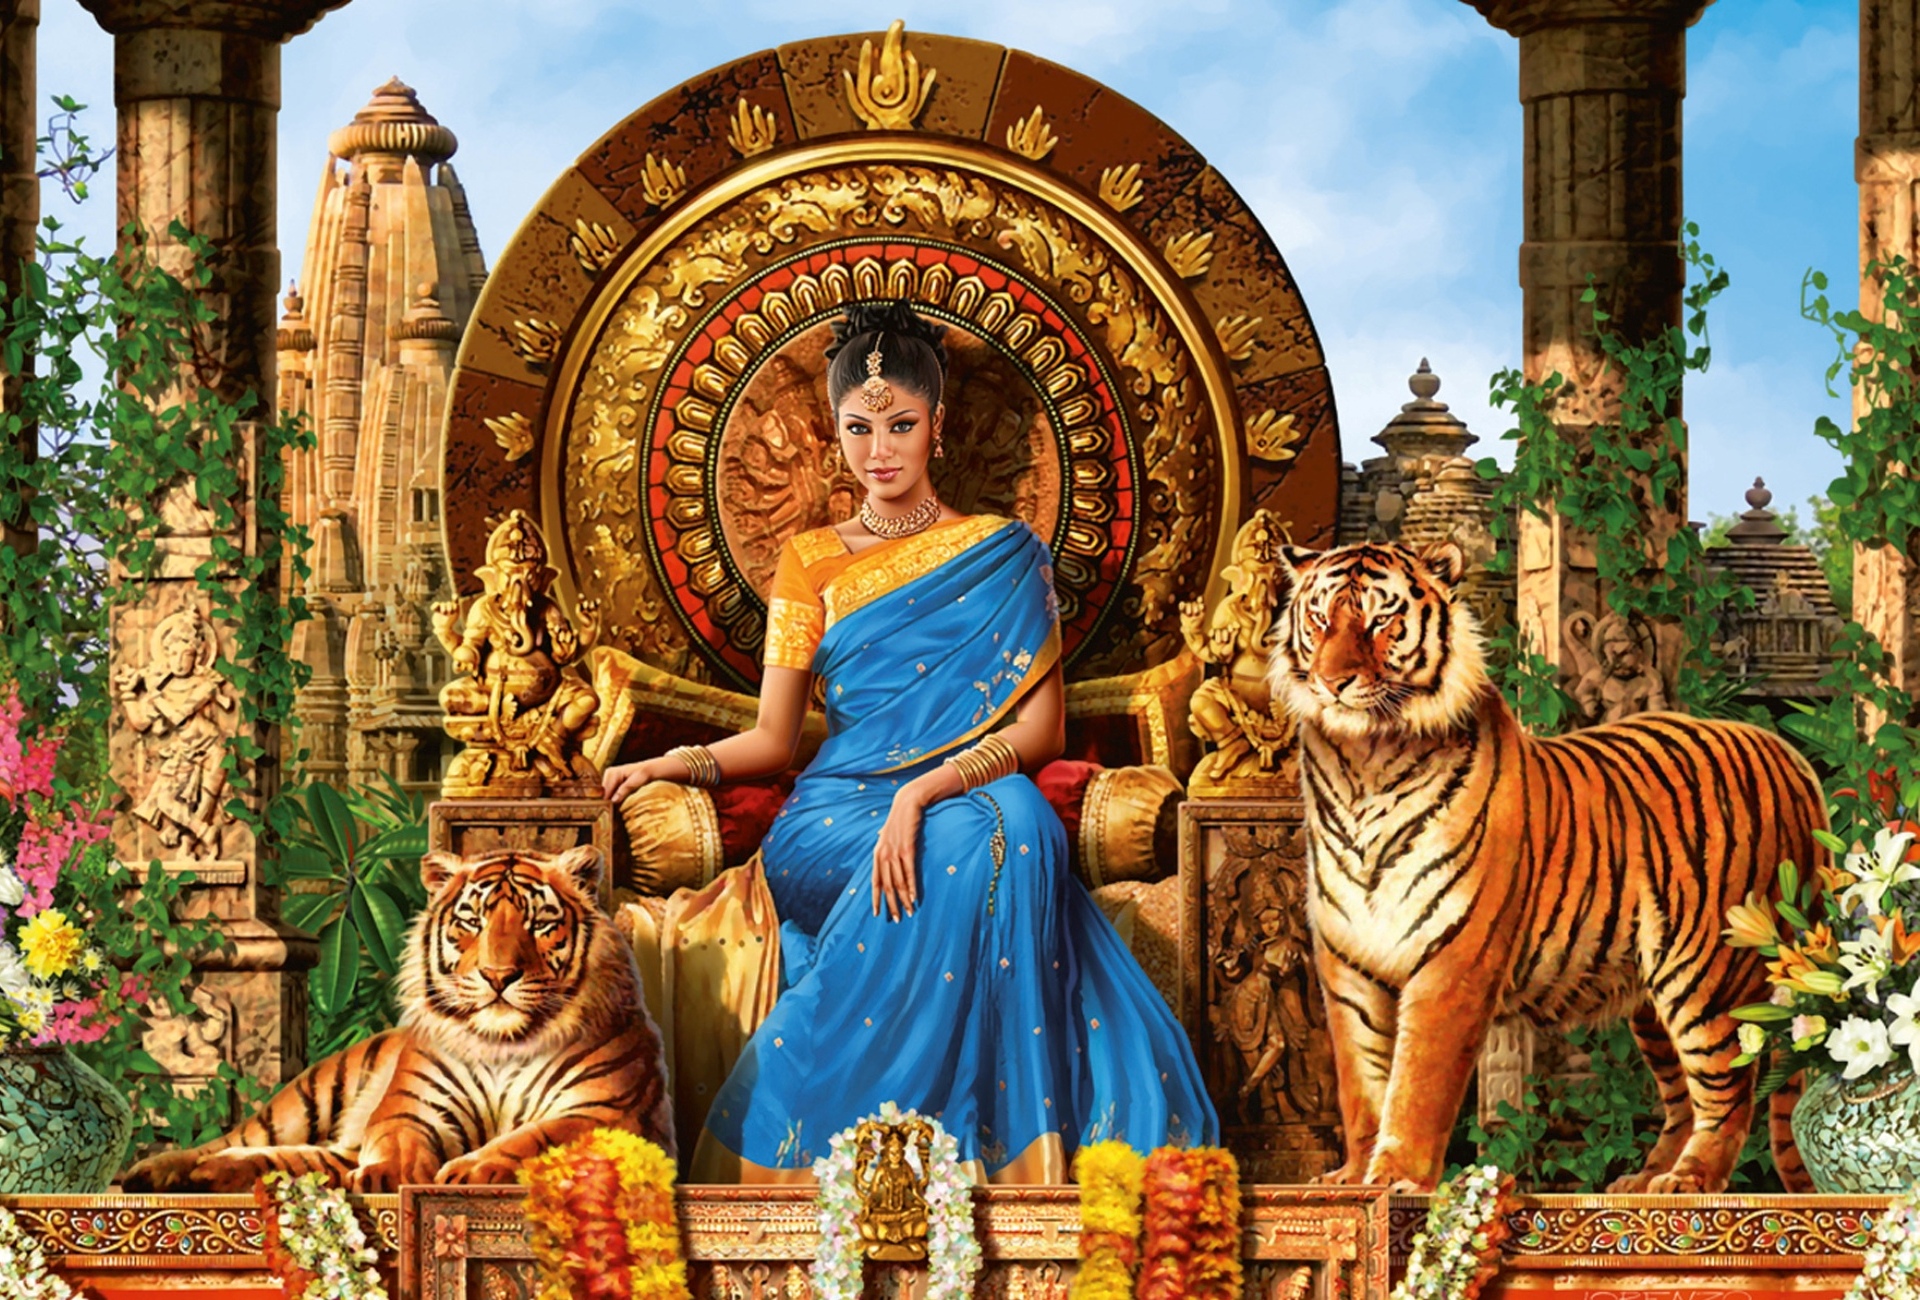 Tiger Queen India Full HD Fond D Cran And Arri Re